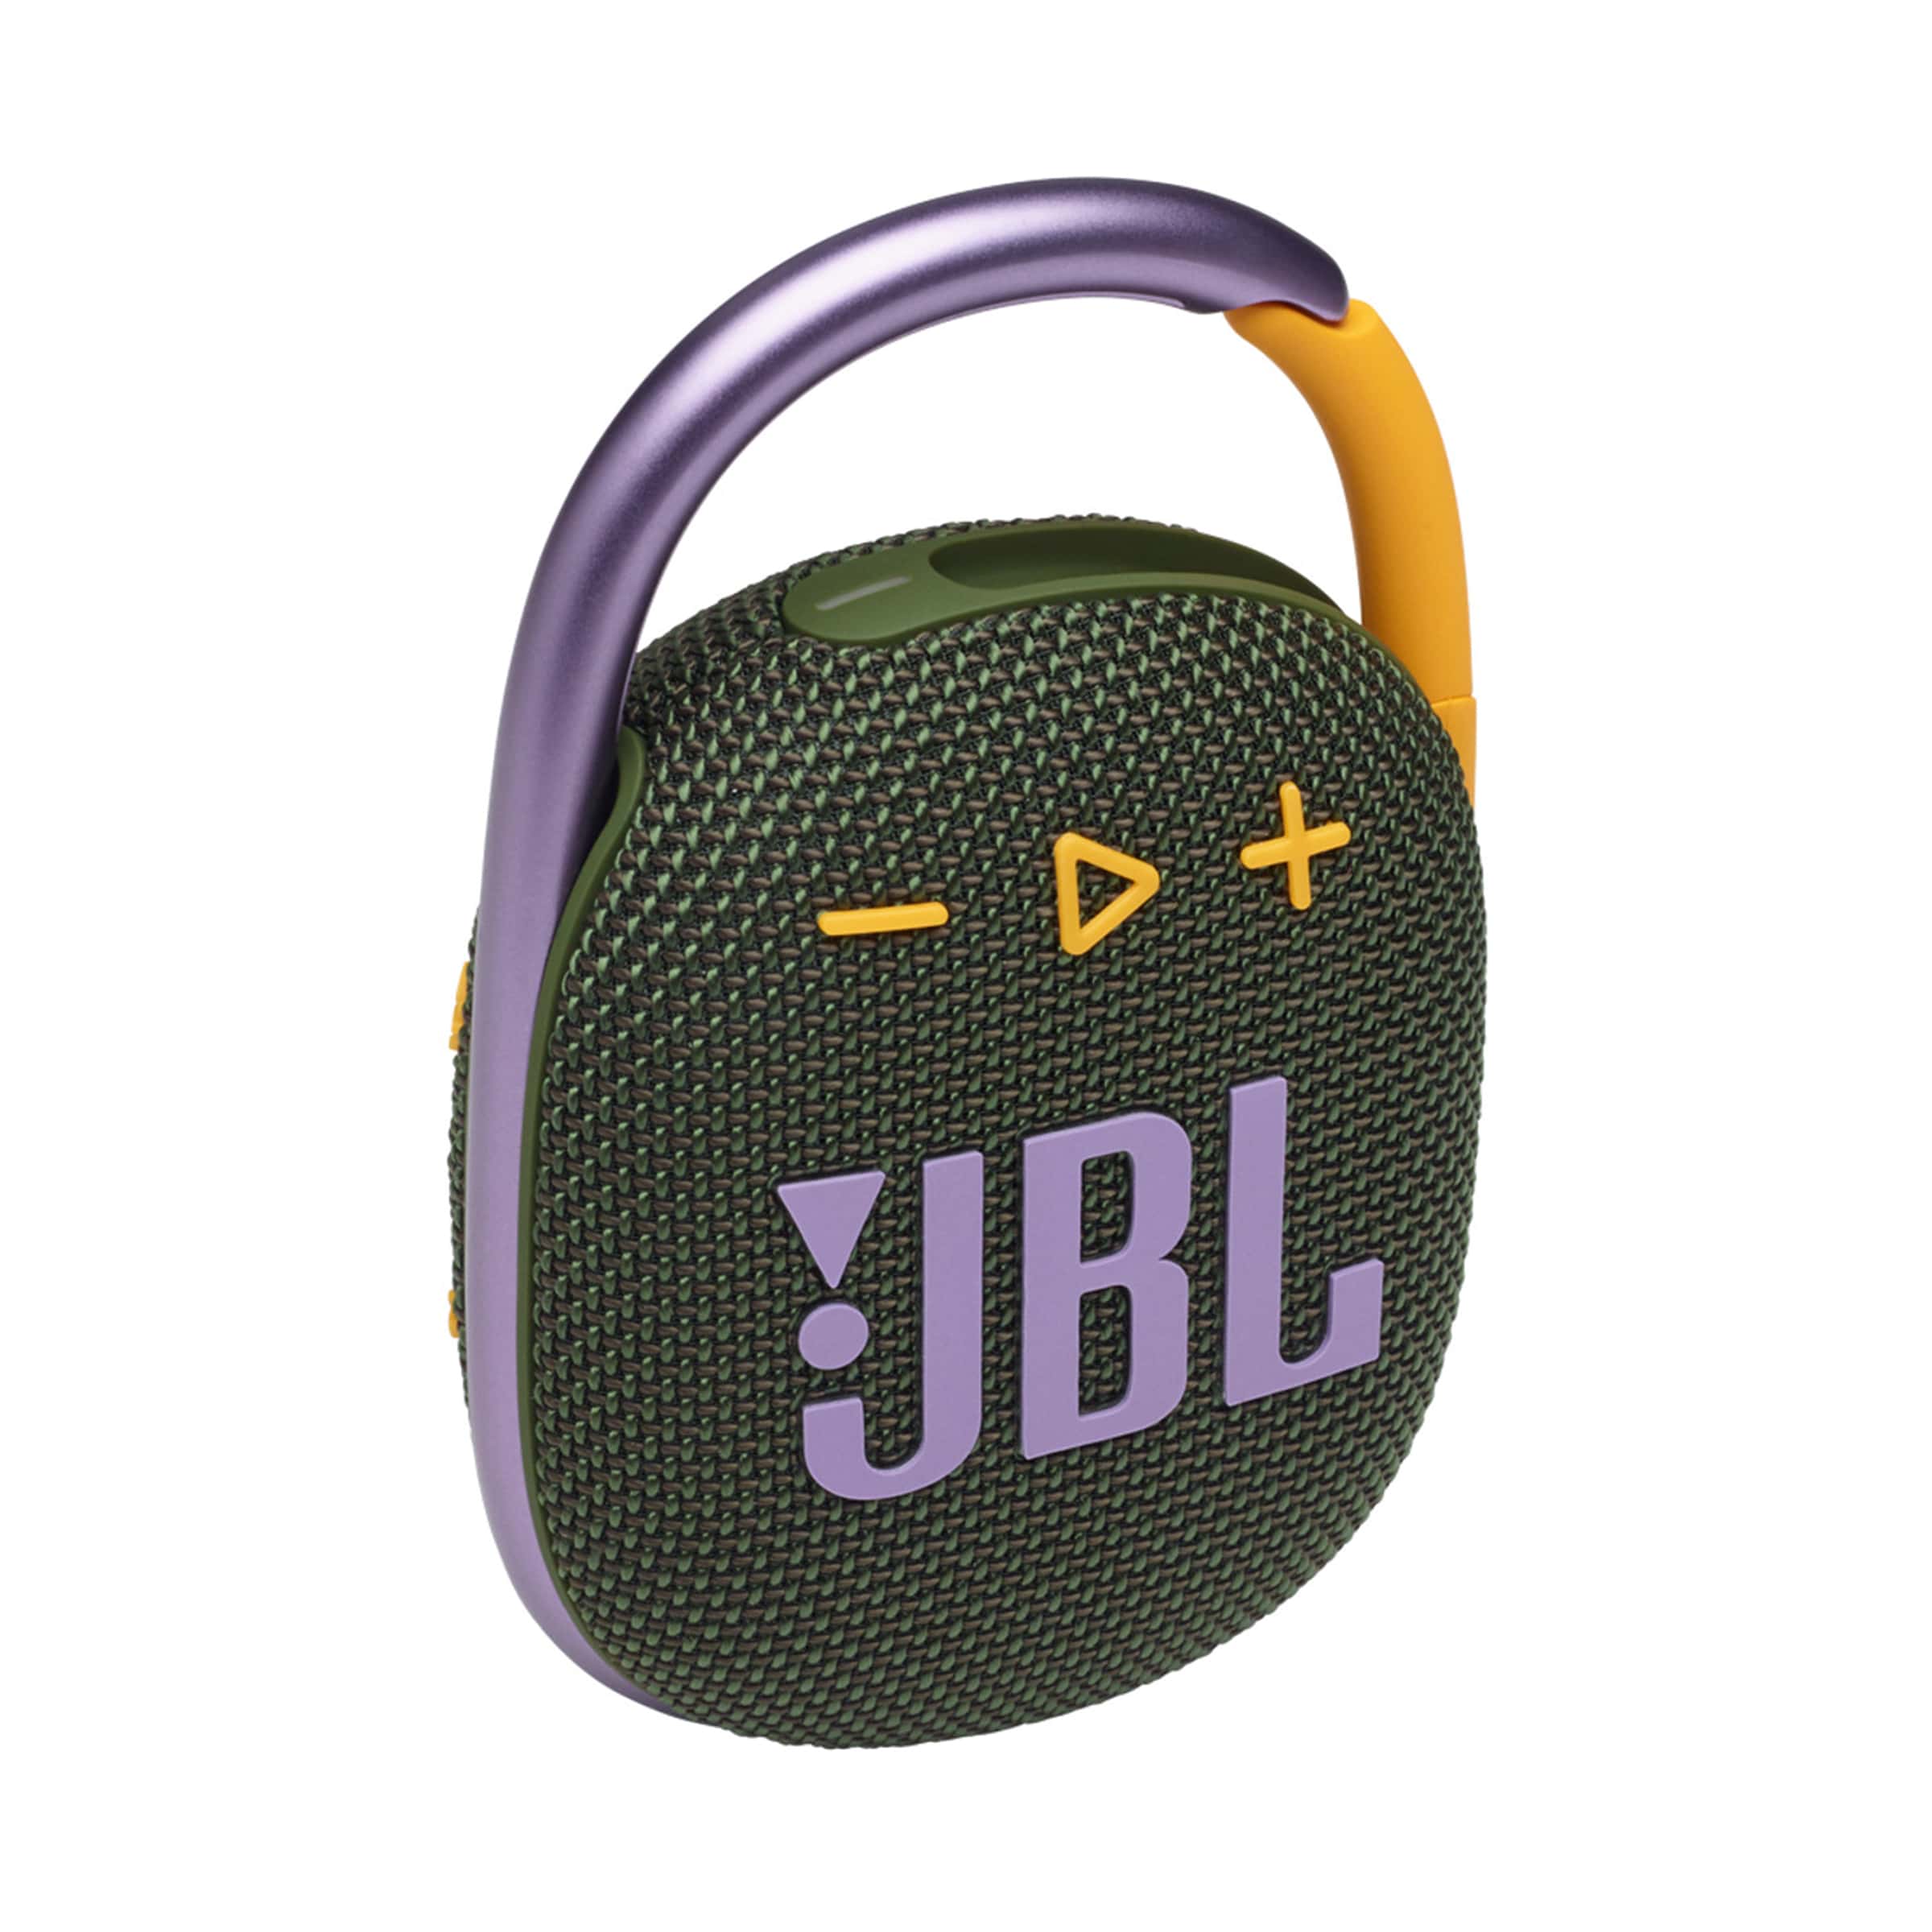 Altavoz JBL personalizado